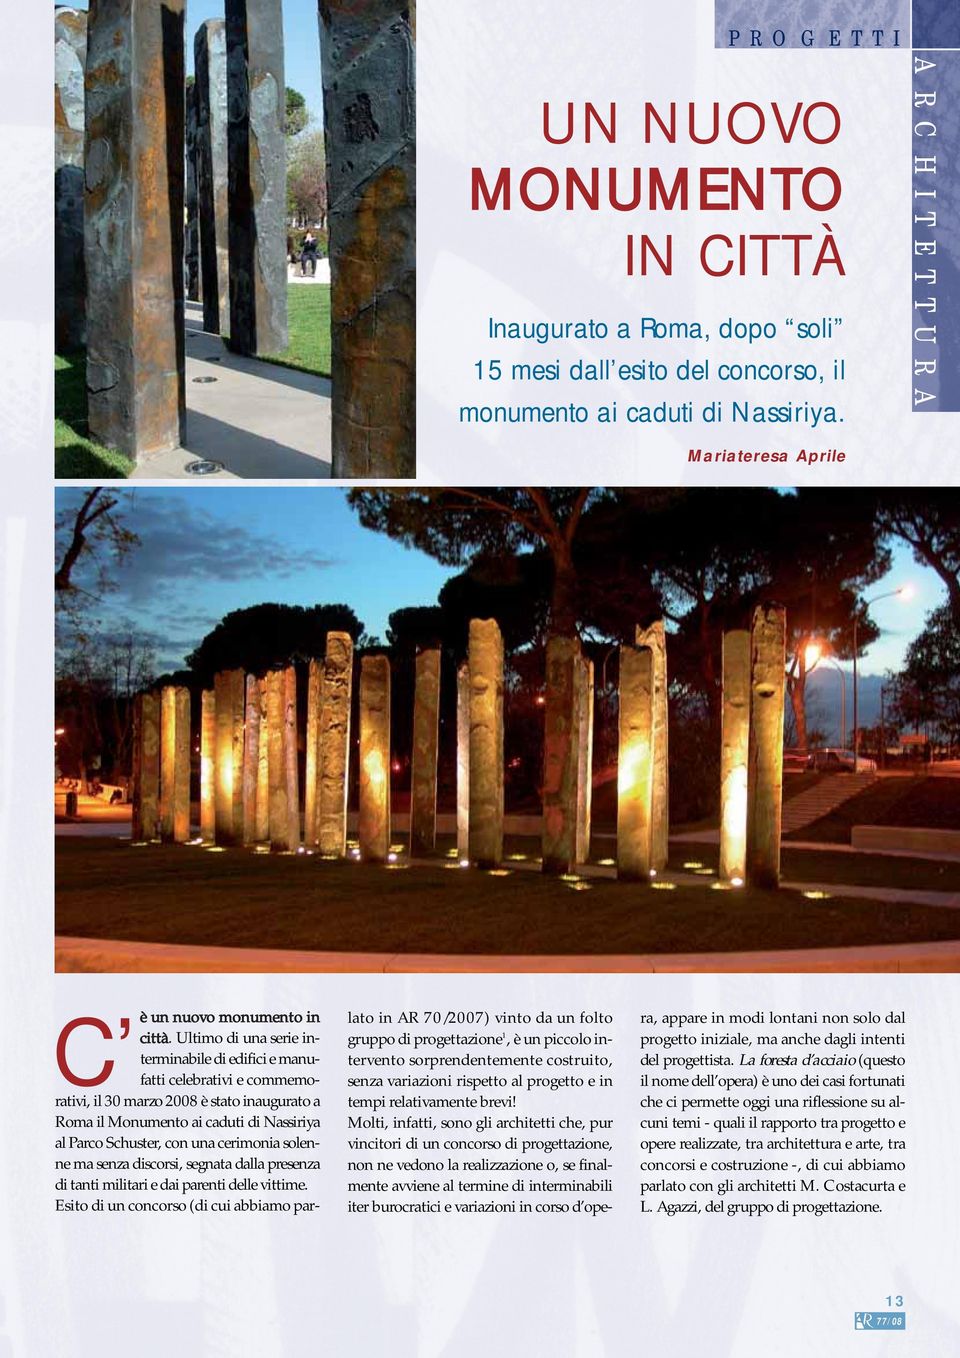 Ultimo di una serie interminabile di edifici e manufatti celebrativi e commemorativi, il 30 marzo 2008 è stato inaugurato a Roma il Monumento ai caduti di Nassiriya al Parco Schuster, con una